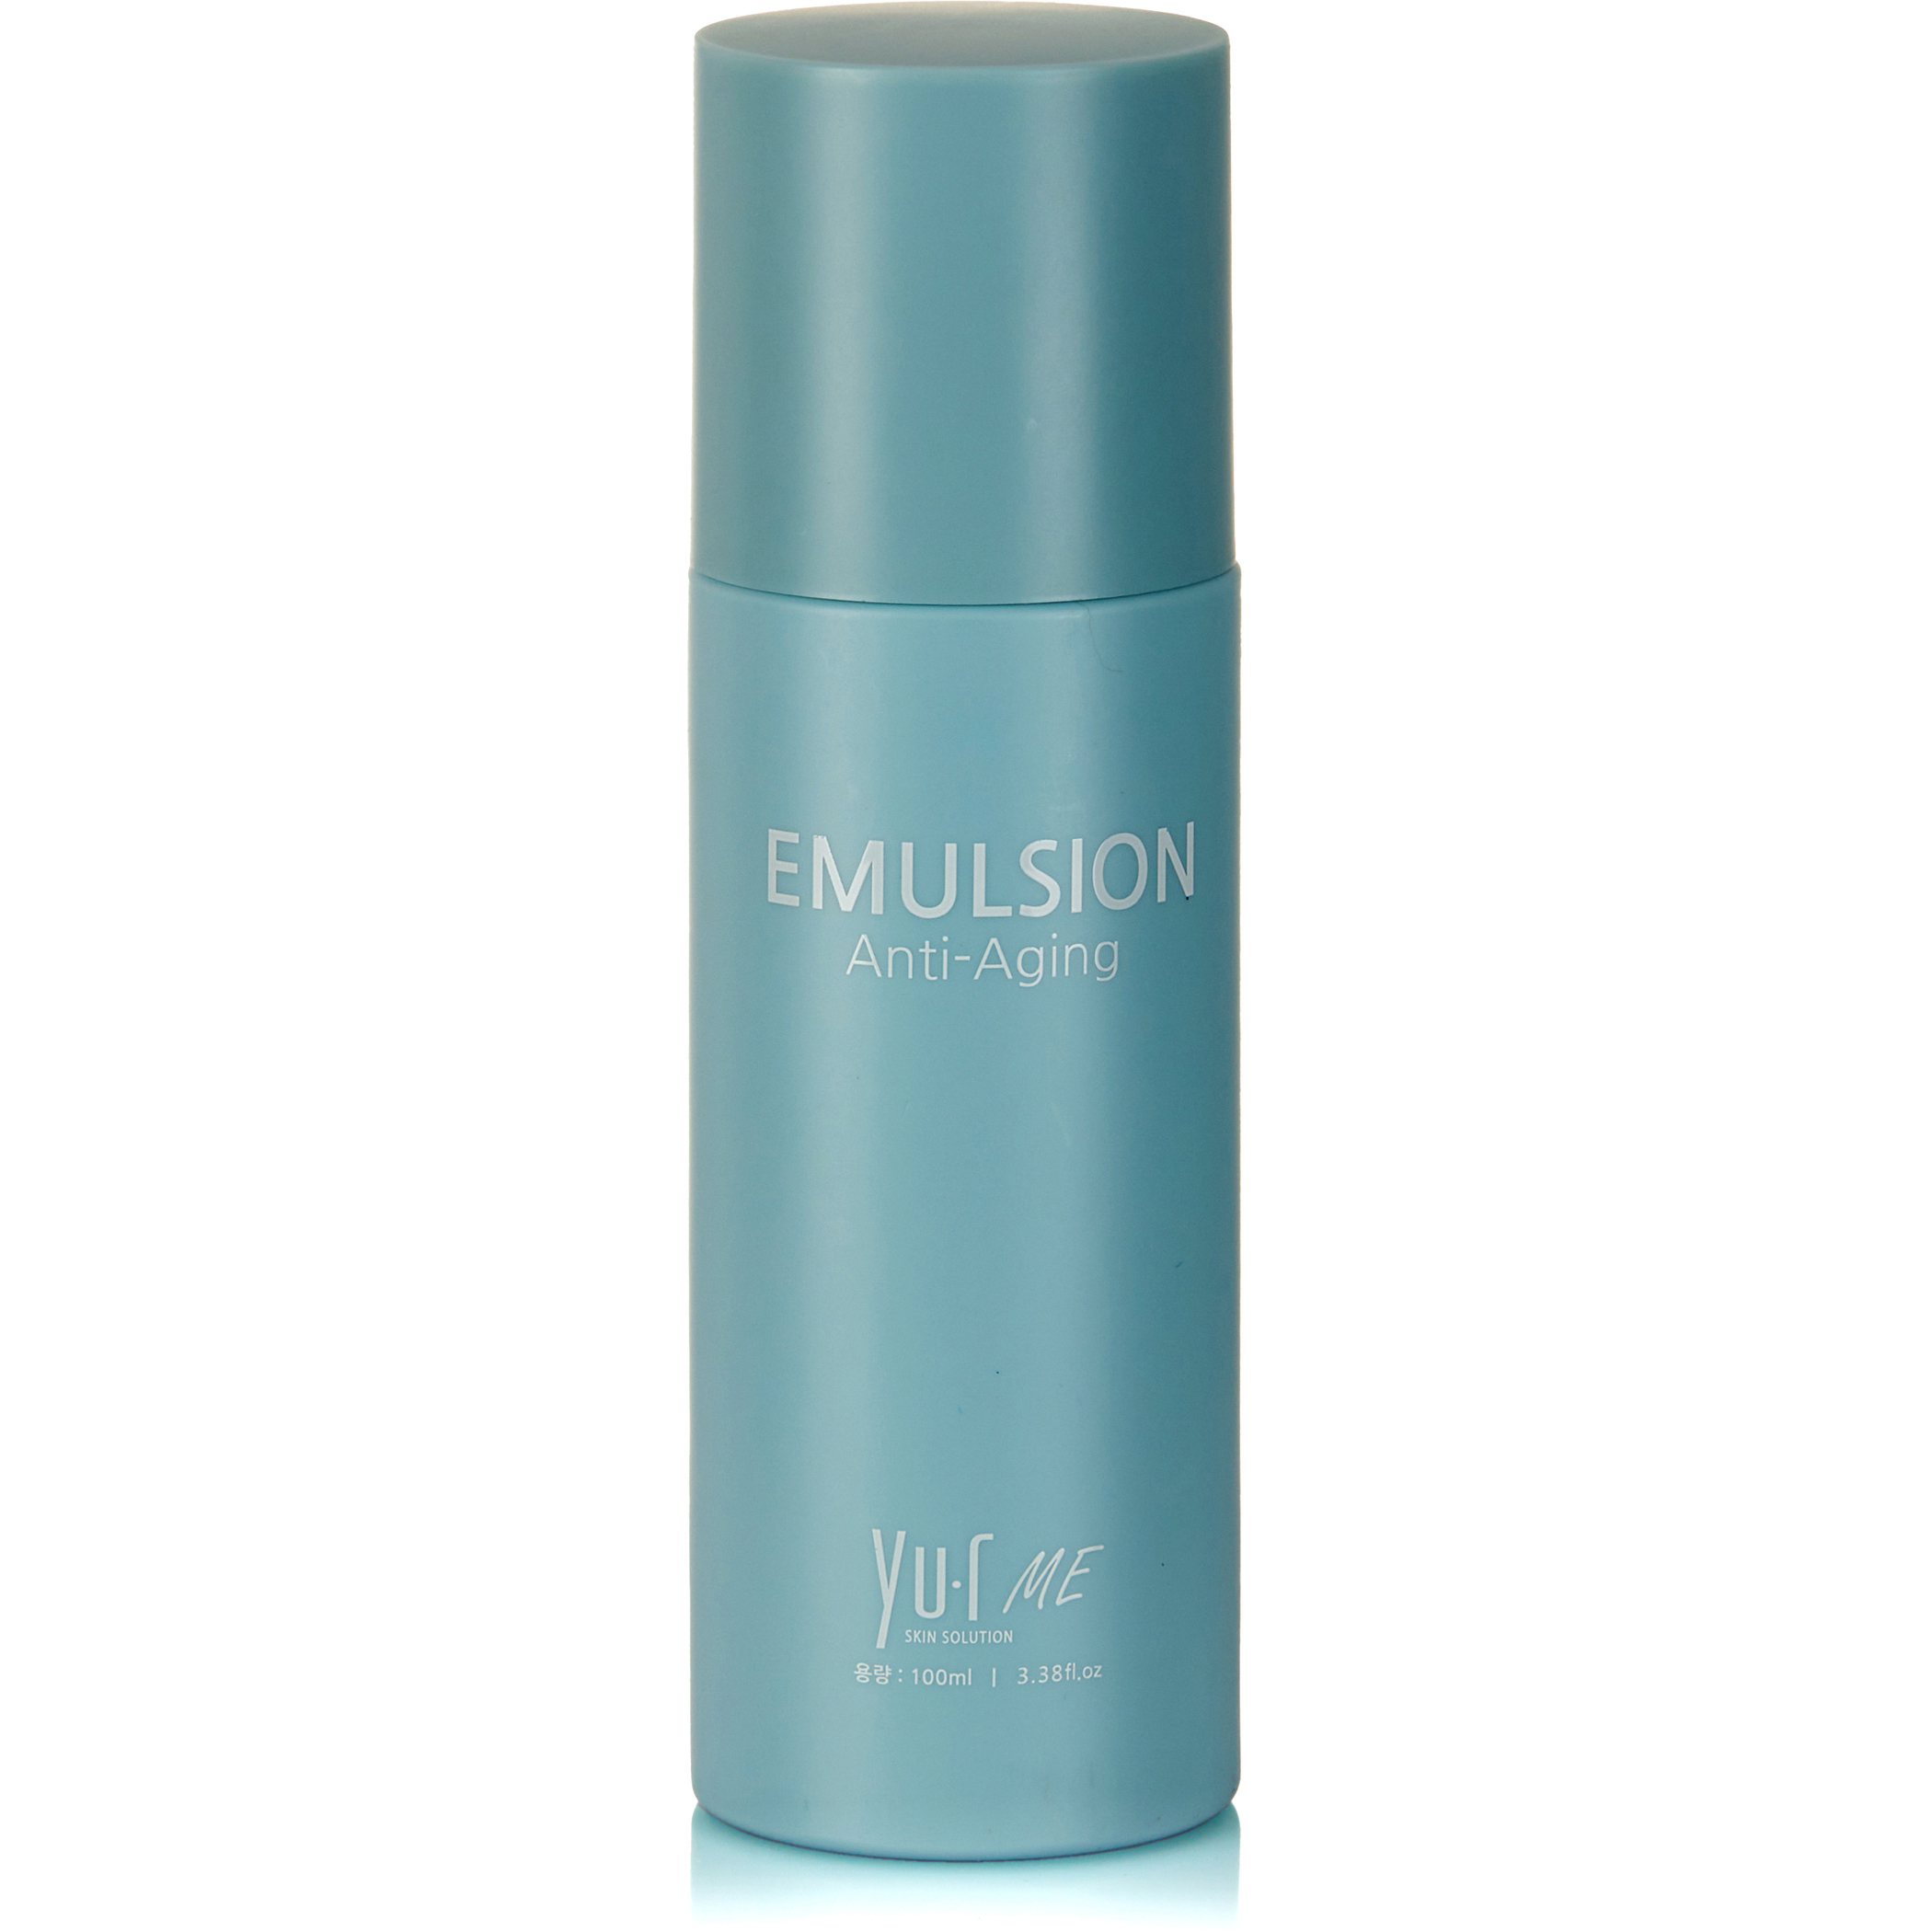 Эмульсия для лица Yu.R Me Emulsion, 100 мл itfer эмульсия для лица интенсивное увлажнение hydro intensive moisturizing emulsion